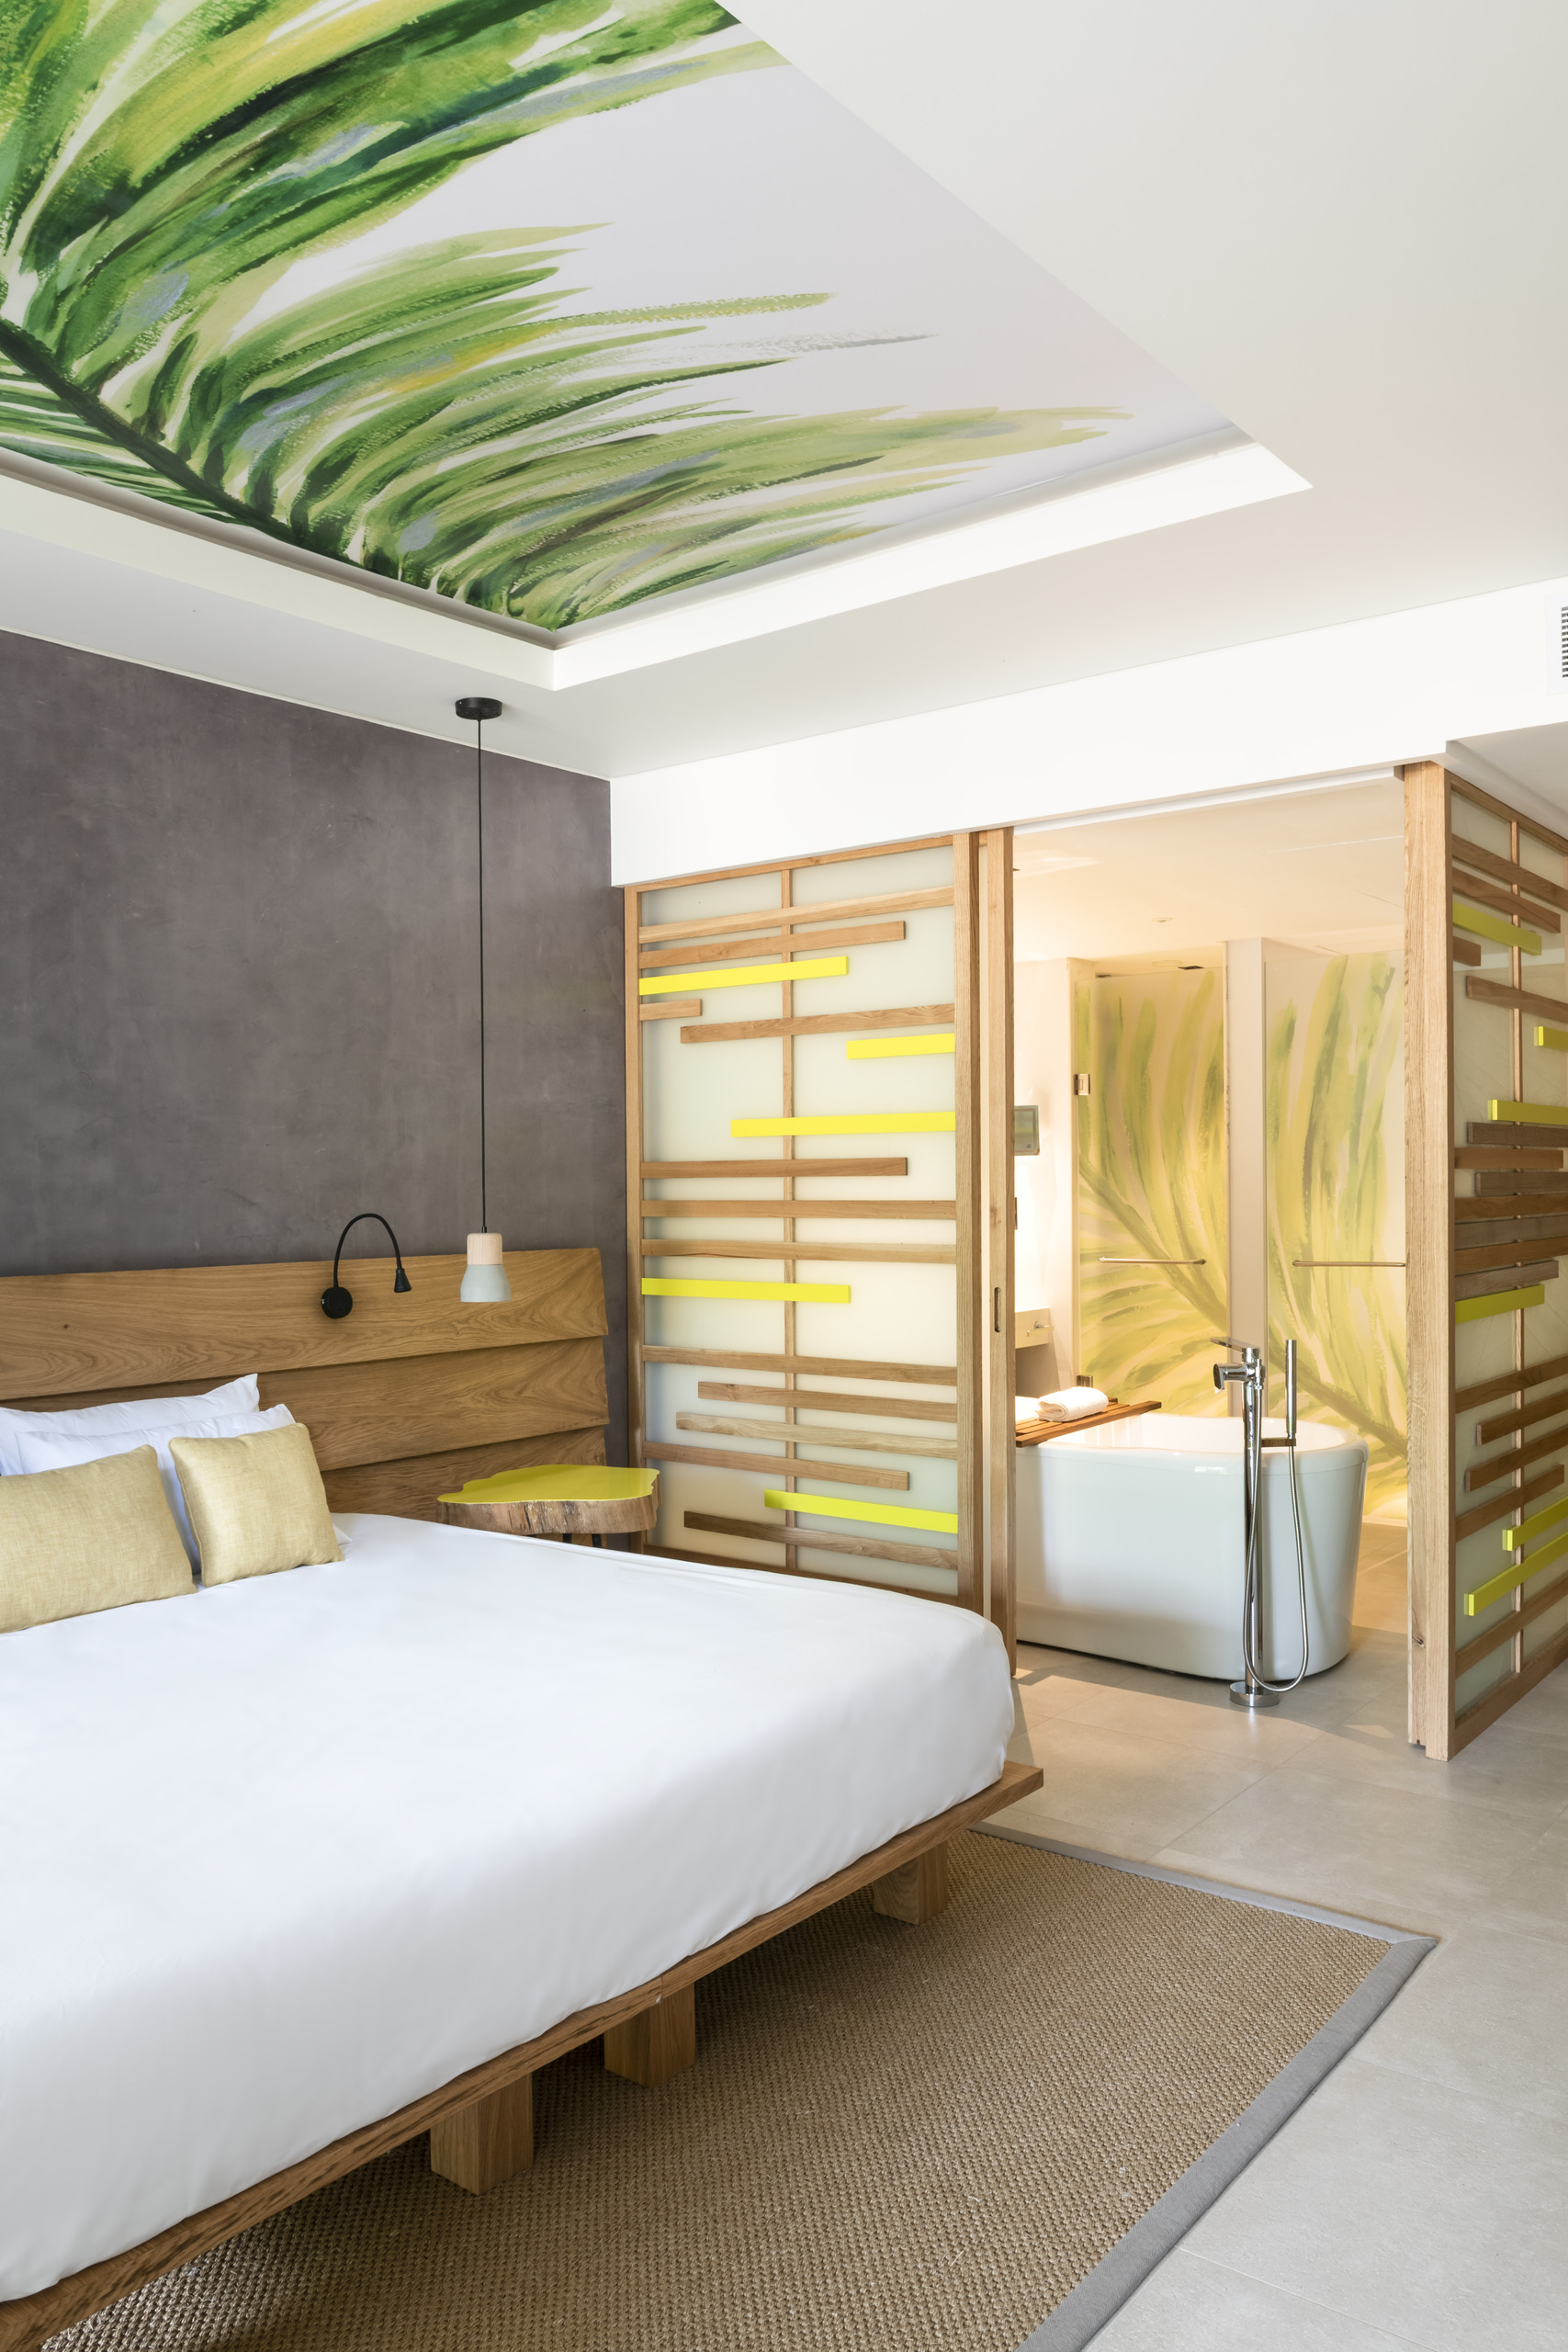 Just Honeymoons - Club Med Seychelles Stunning Rooms